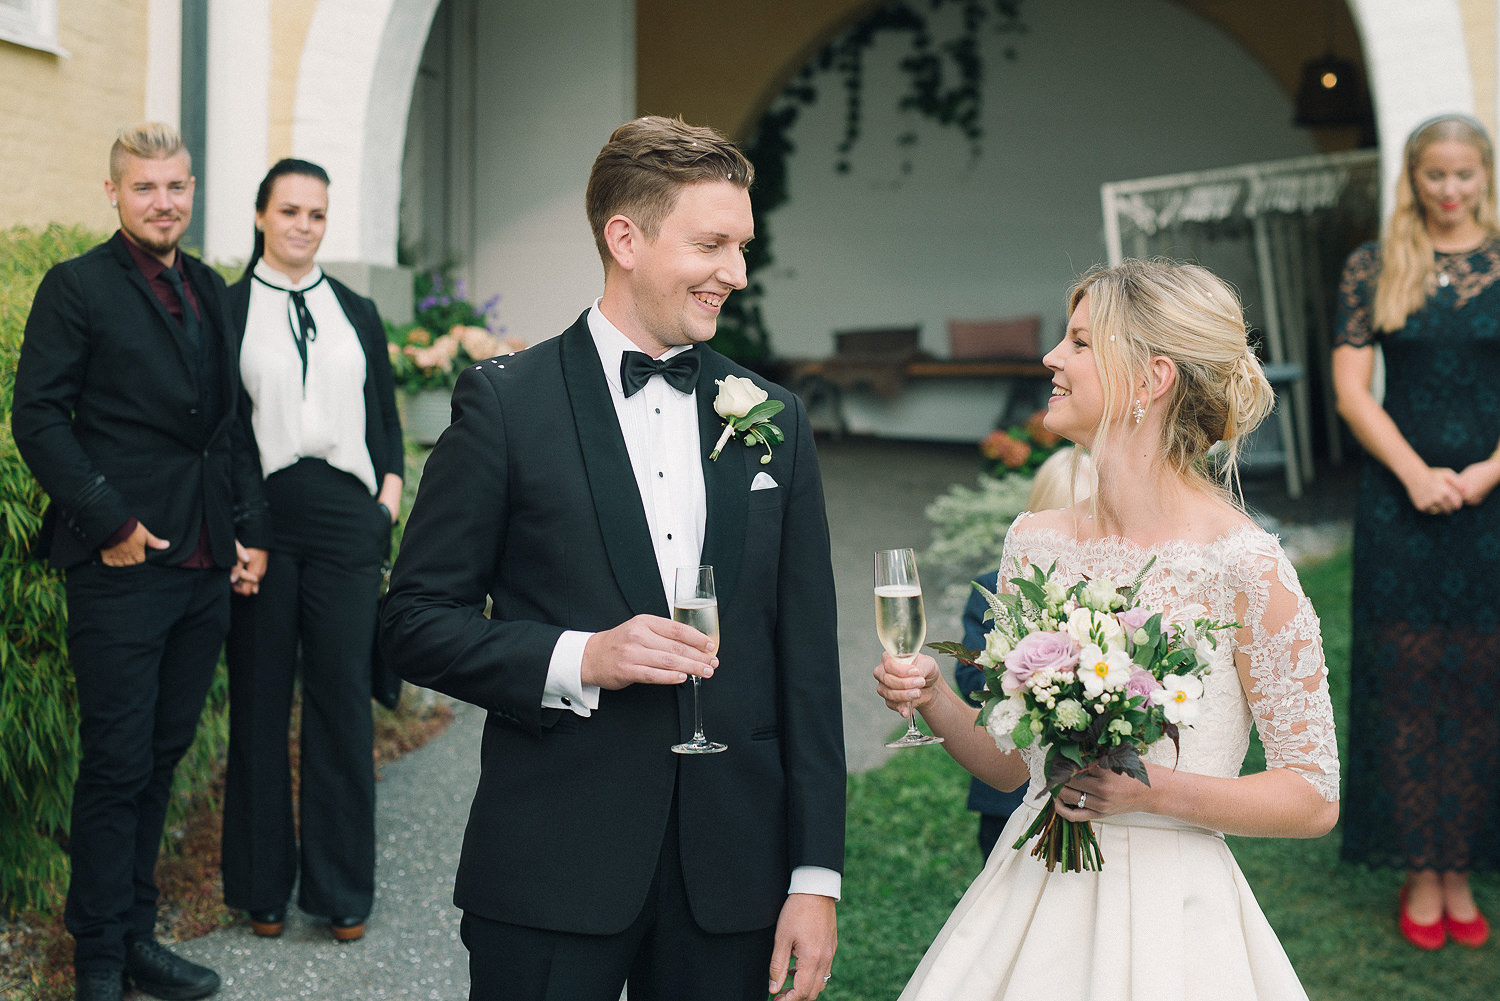 Bröllopsfotograf Ekensdal